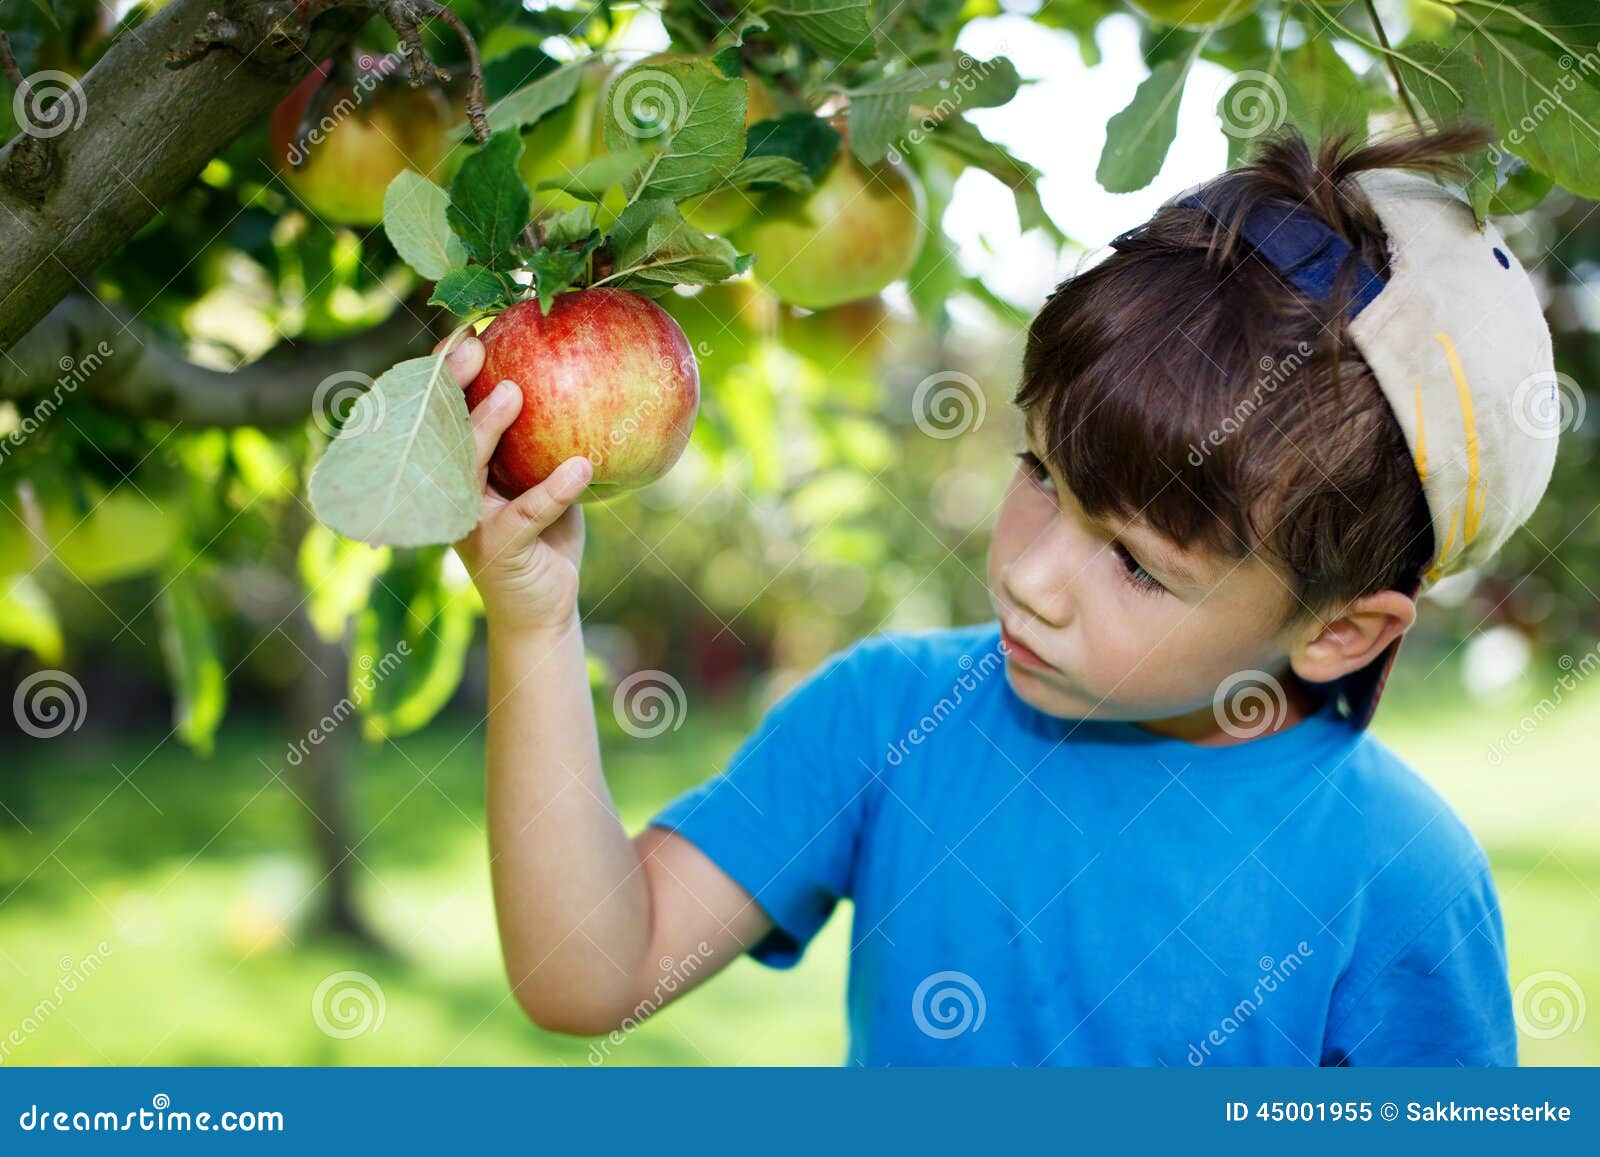 little boy in cap picking apples